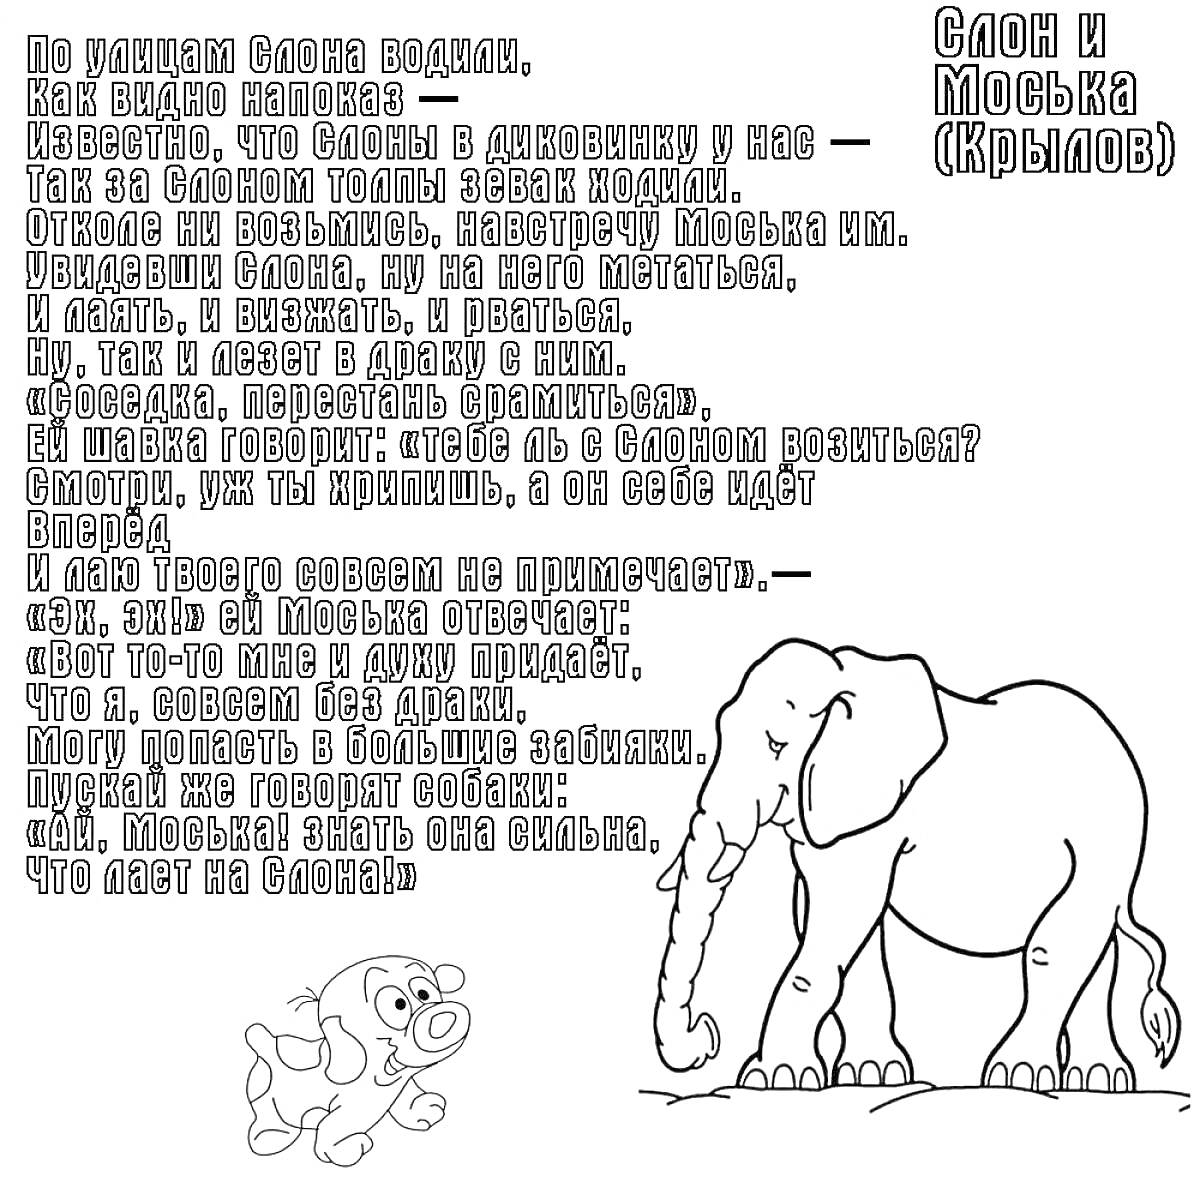 Слон и Моська (басня Крылова, иллюстрация: слон и собака)